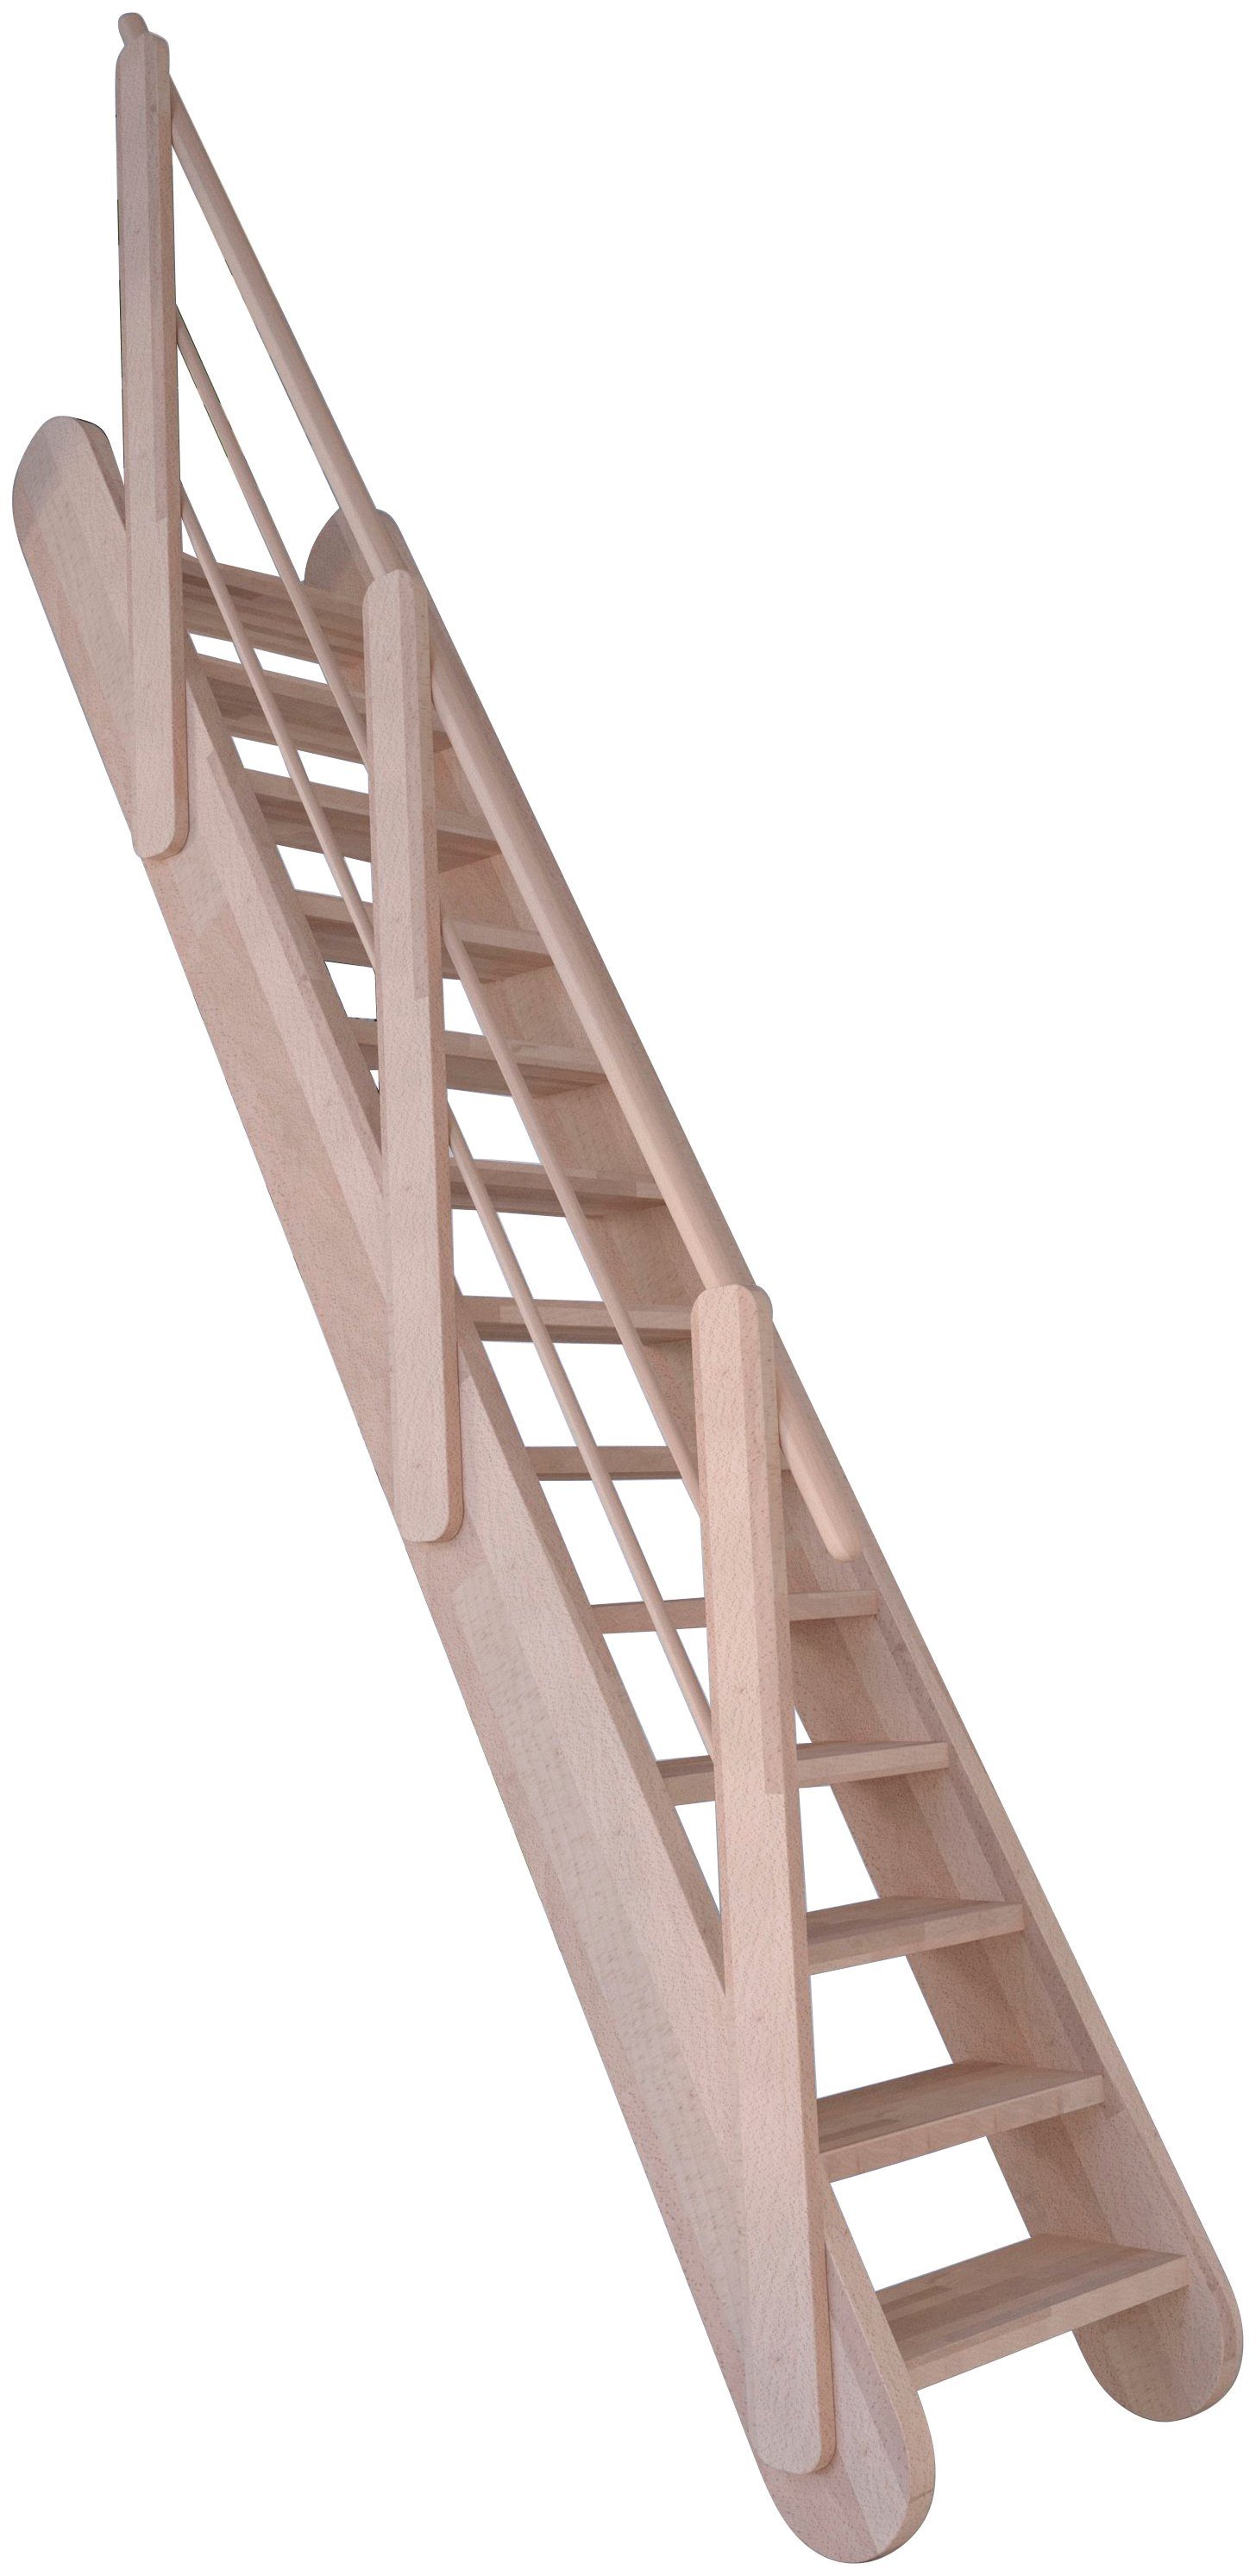 Raumspartreppe Stufen Holz-Holz Durchgehende Samos, offen, Design Starwood Geländer, Wangenteile Massivholz